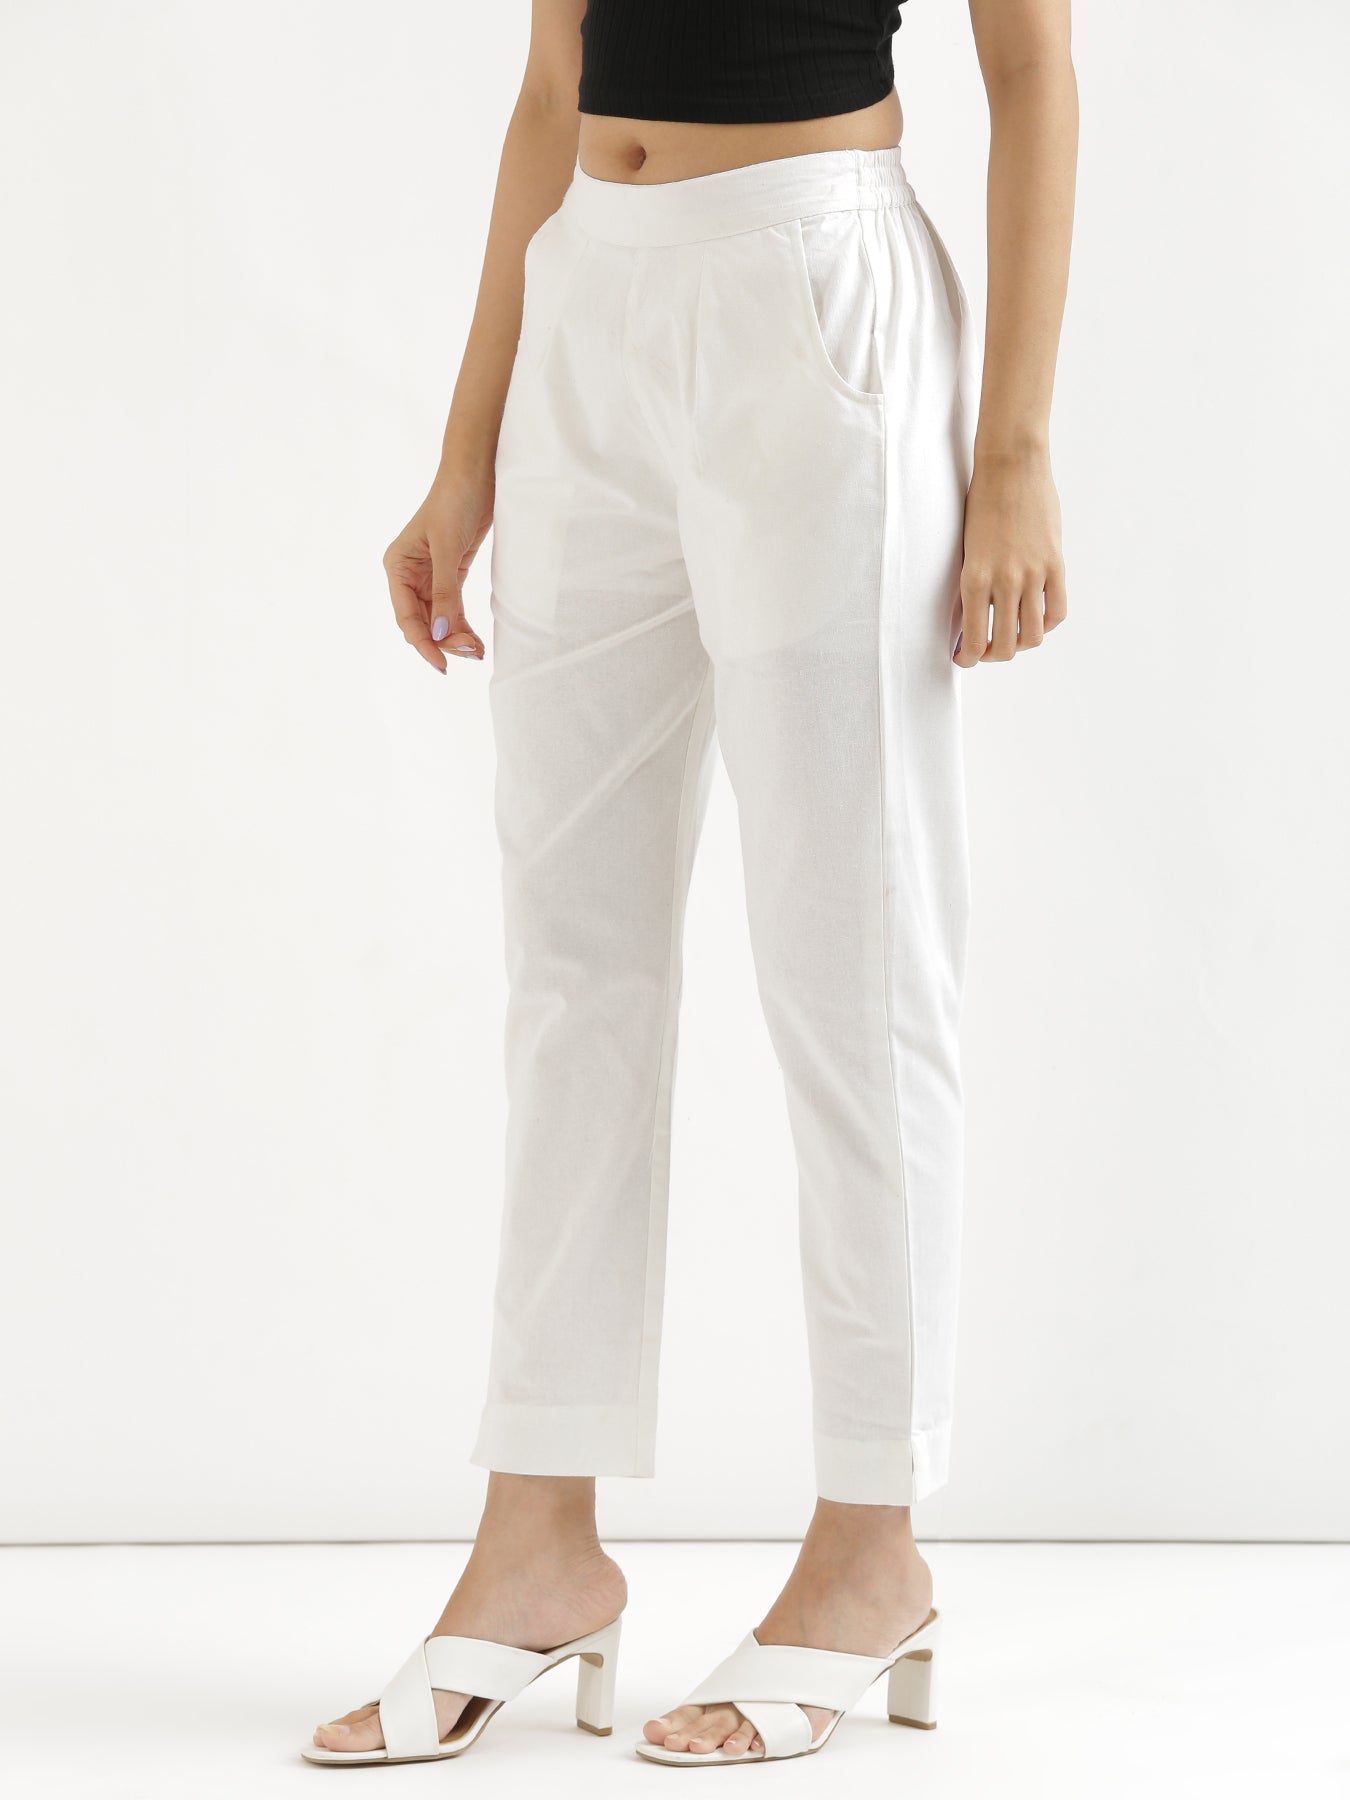 Buy White Cotton Plain Saada Trouser